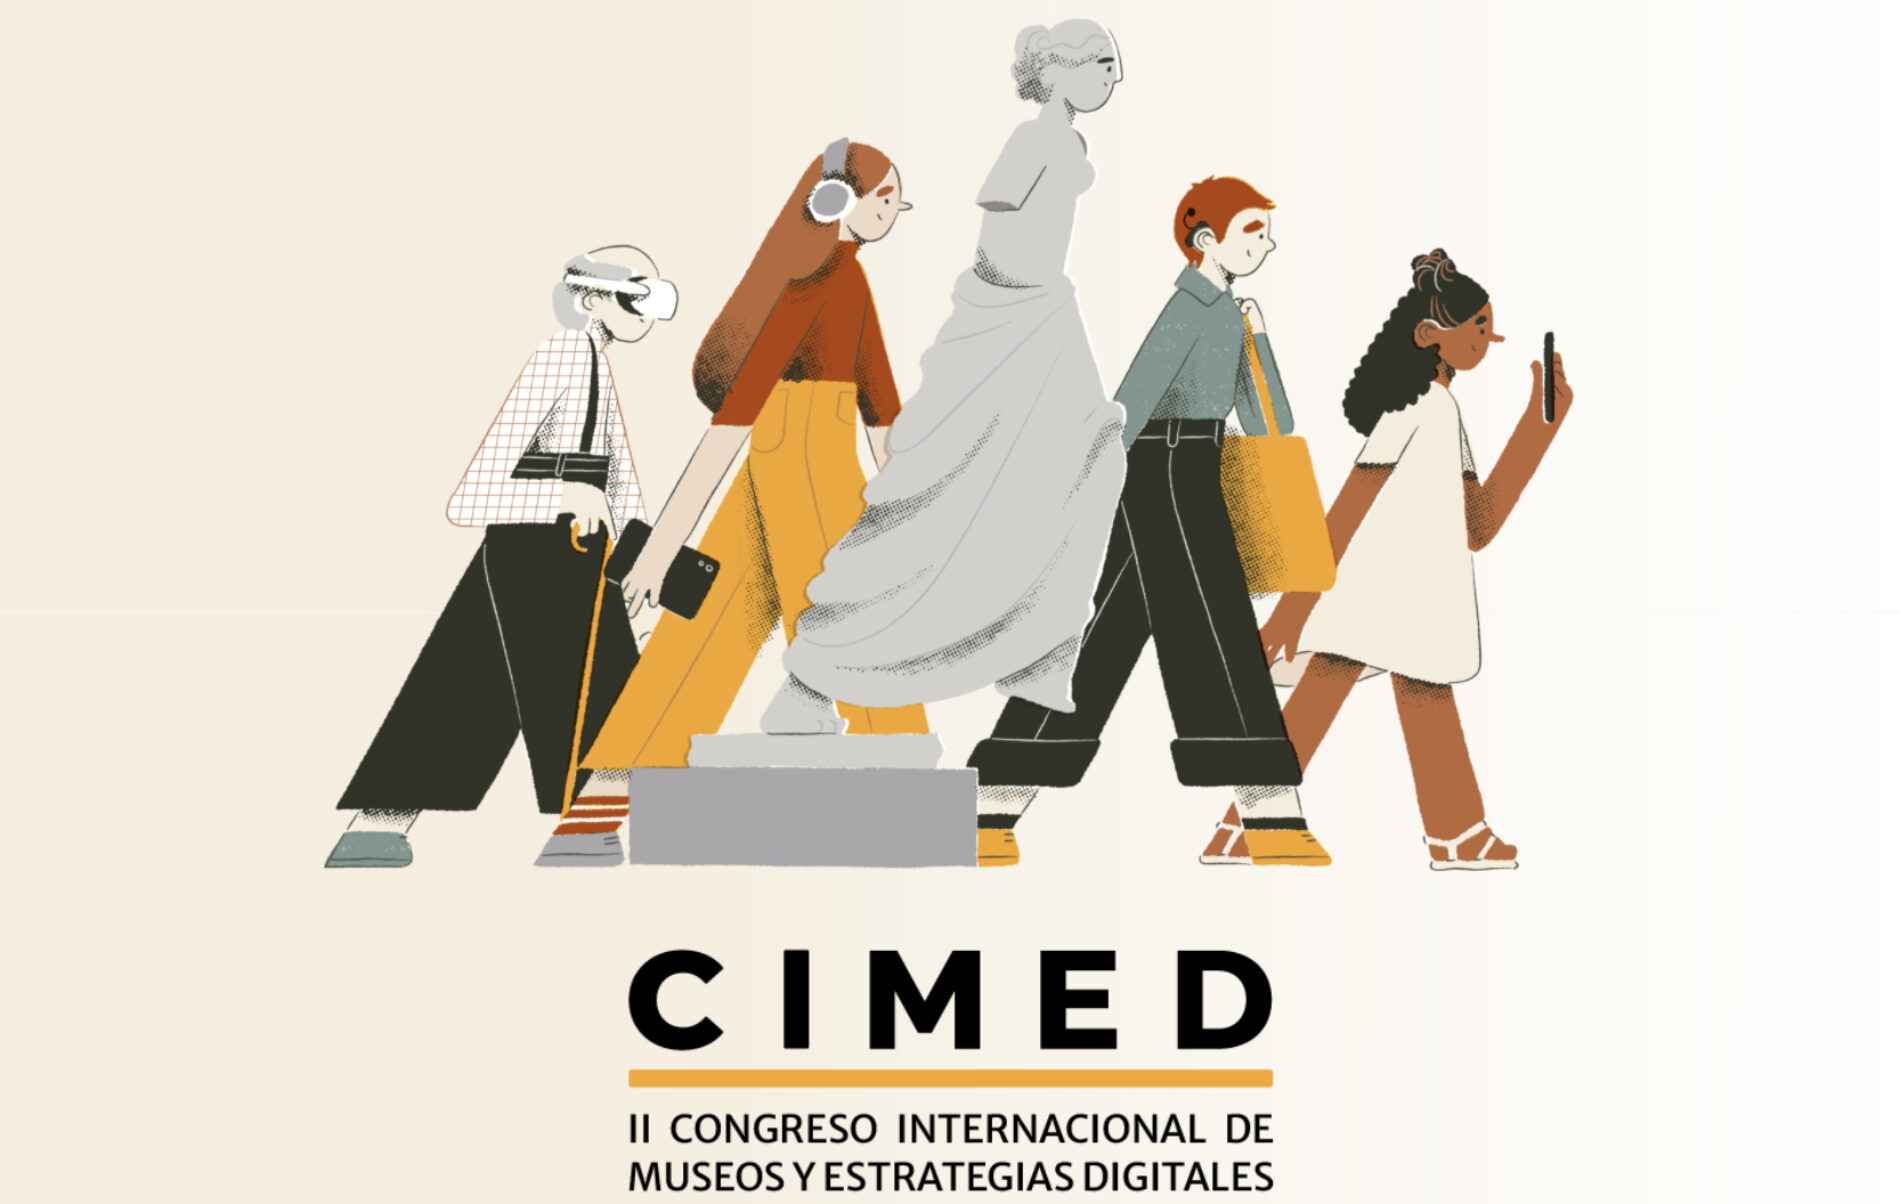 II Congreso Internacional de Museos y Estrategias Digitales: innovaciones para las instituciones culturales de España y América Latina